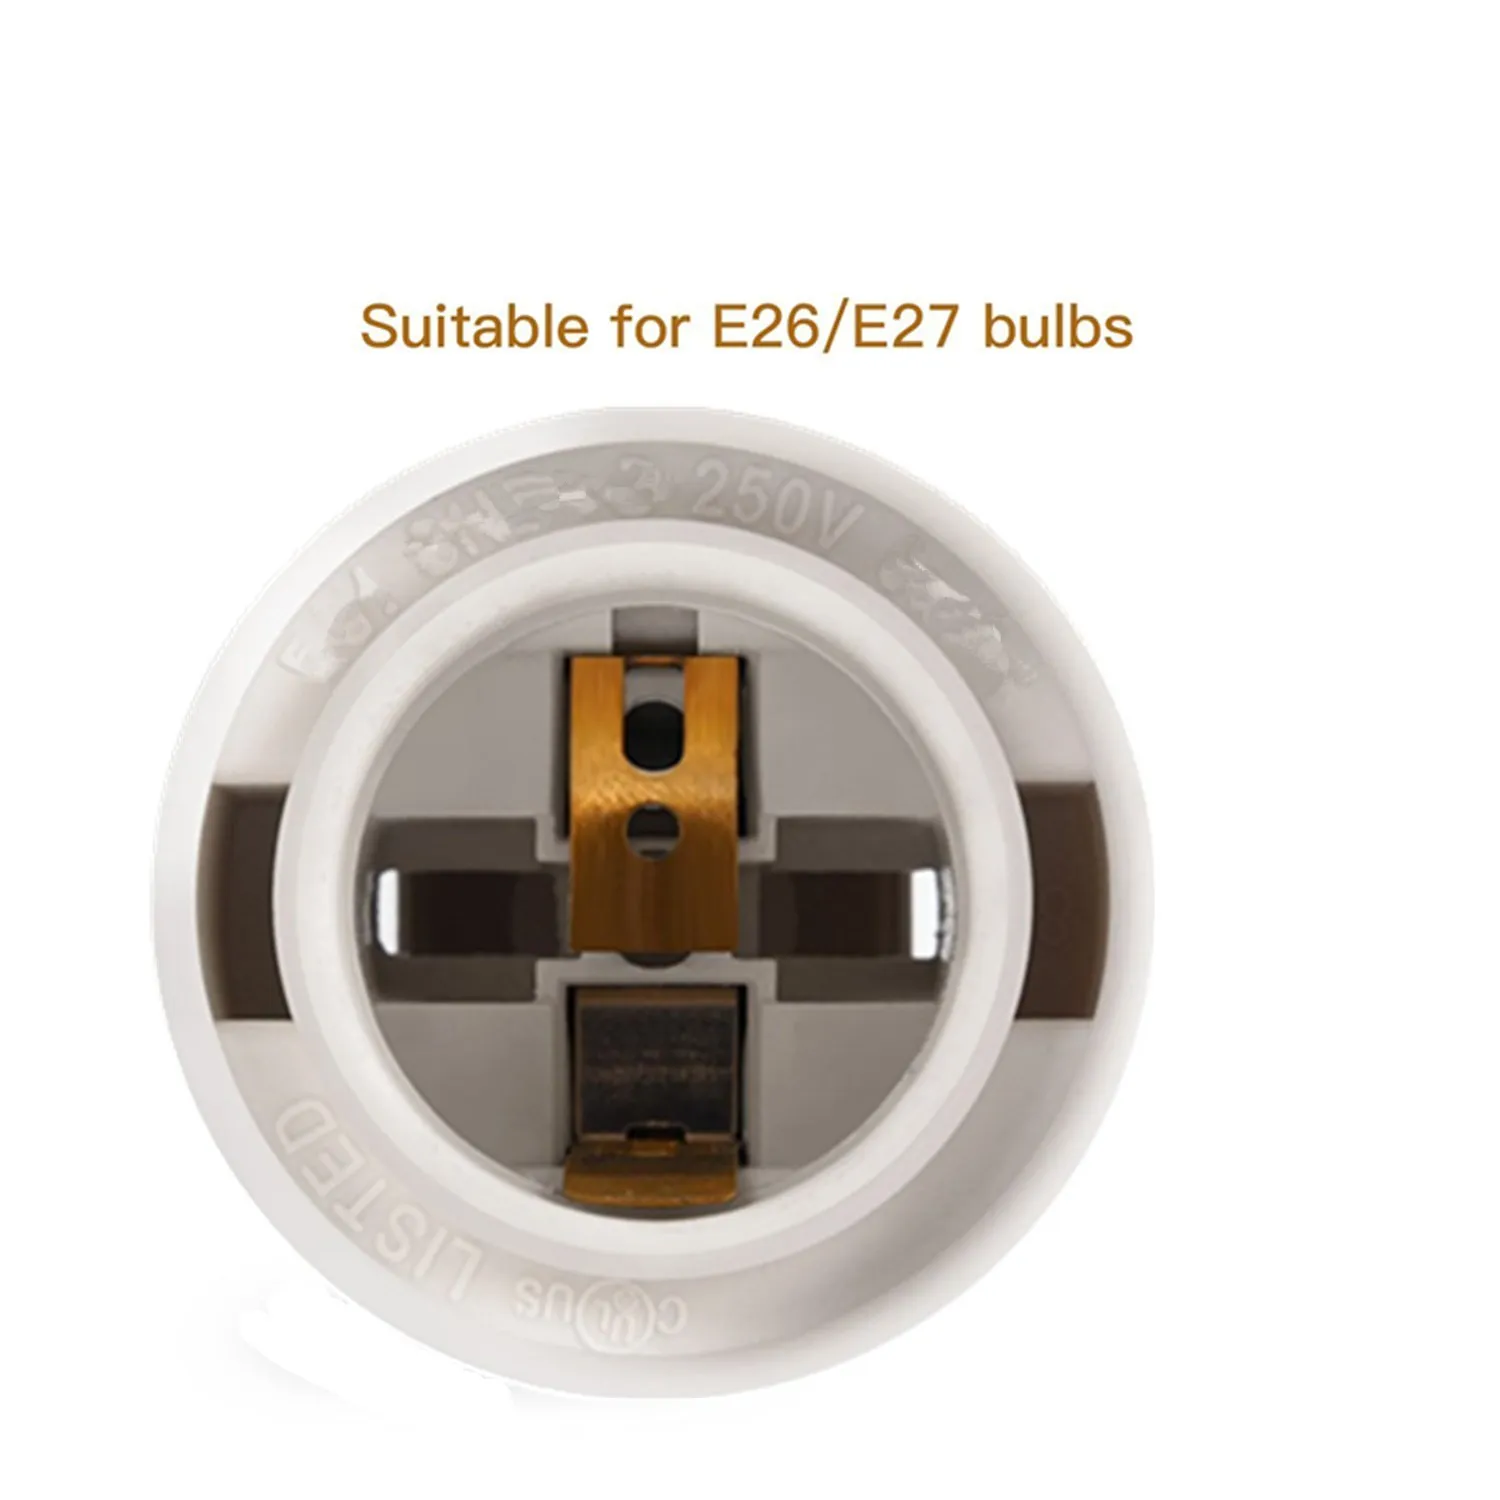 Uzatma Asılı Fener Kordon Kablo UL 12Ft 120 W E26 E27 Soket ile Dişli Anahtarı ve On / off Anahtarı Mutfak Yatak Odası Banyo için